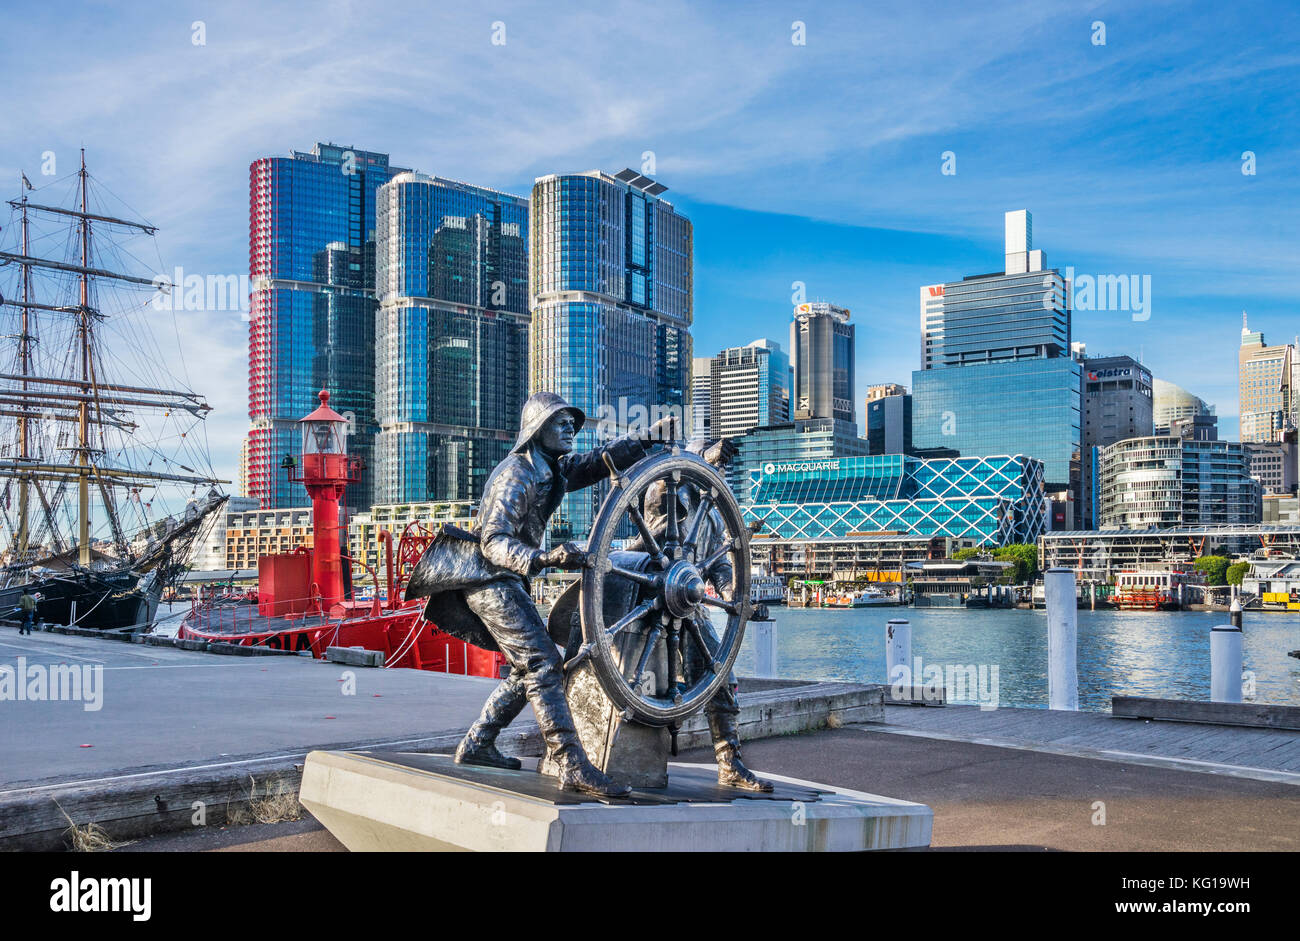 Australia, Nuovo Galles del Sud, Sydney Darling Harbour, bronce scultura per celebrare il windjammer marinai presso la banchina 7 Maritime Heritage Centre Foto Stock